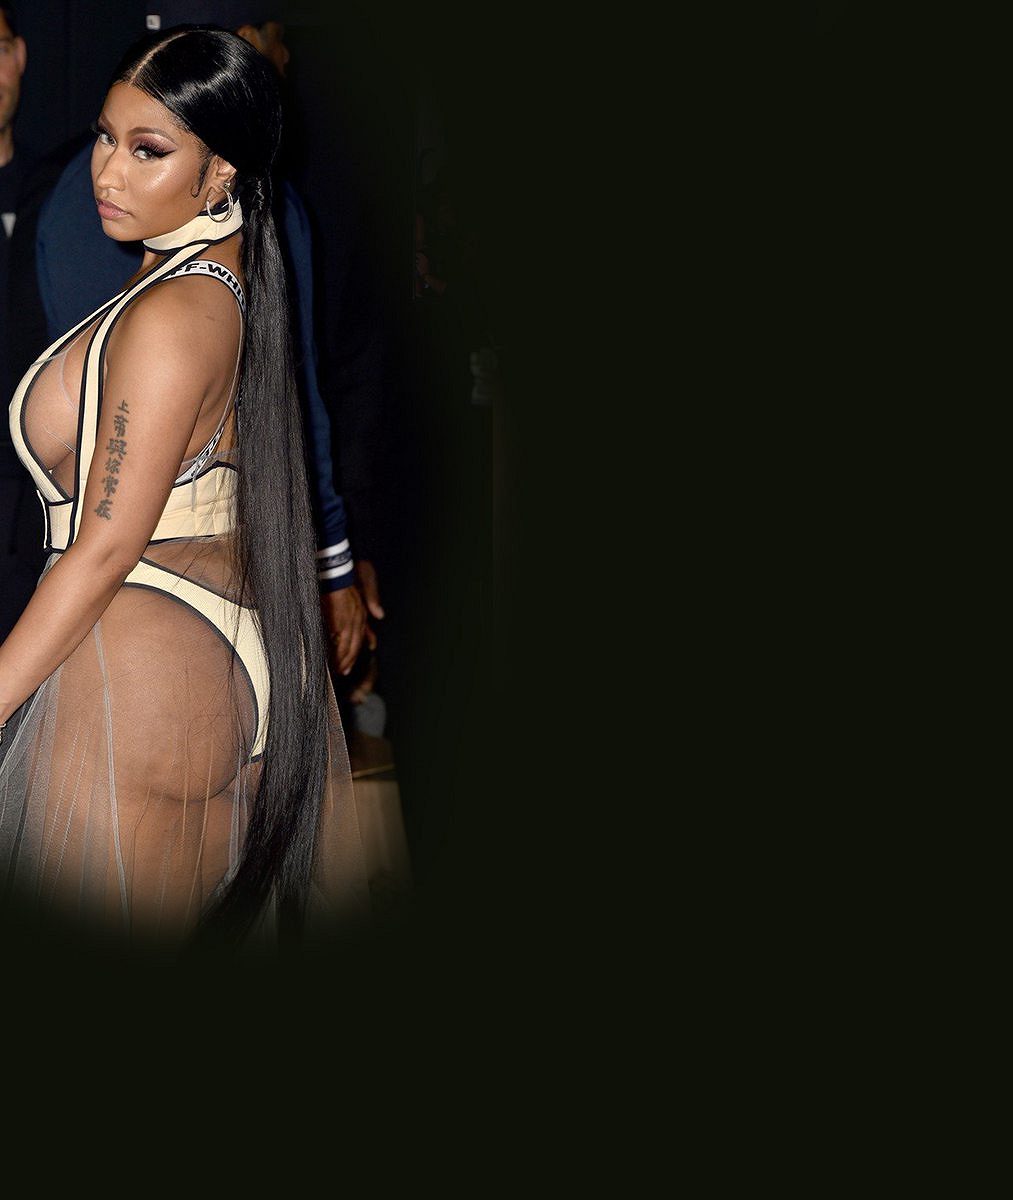 Nicki Minaj nezklamala a ukázala obří pozadí v plné kráse: Průsvitná sukně toho moc nezakryla